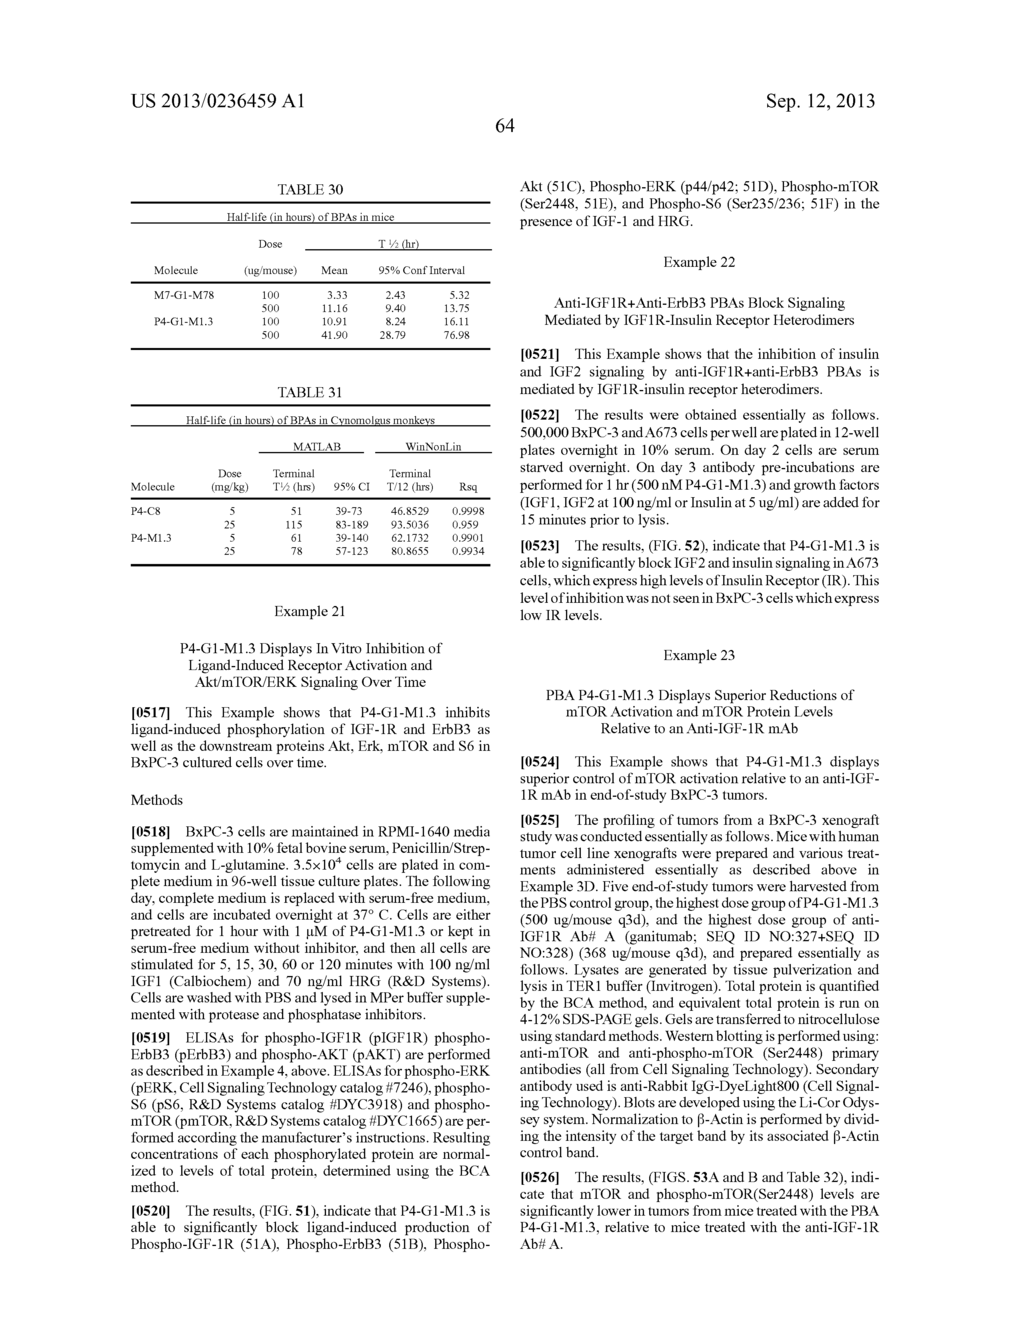 MONOSPECIFIC AND BISPECIFIC ANTI-IGF-1R AND ANTI-ERBB3 ANTIBODIES - diagram, schematic, and image 204